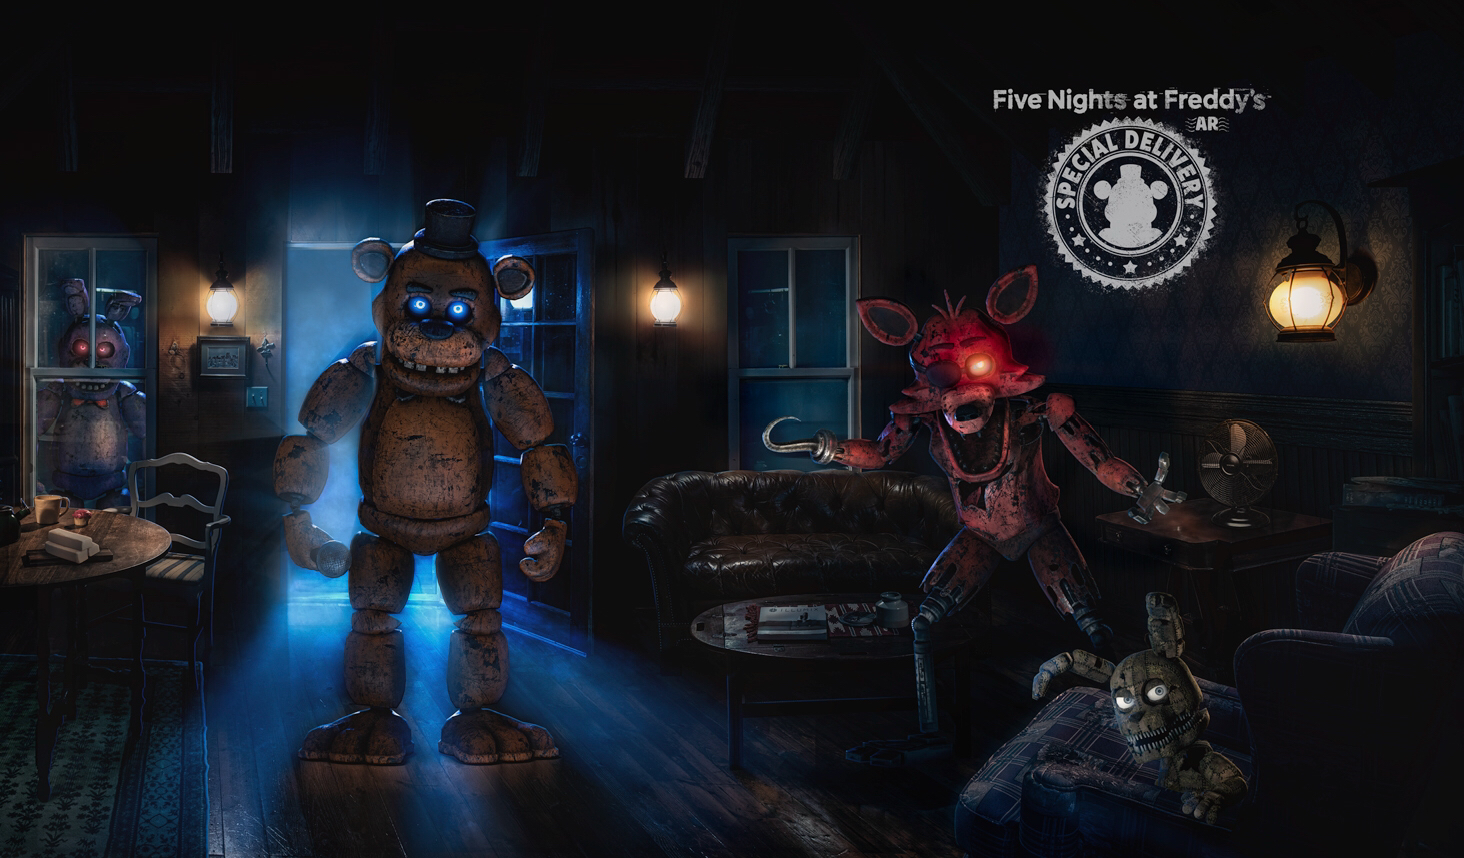 «Five Nights at Freddy's AR: специальная поставка» - это опыт FNAF дополненной реальности, который появится на iOS и Android устройствах этой осенью, и вы можете посмотреть его первый трейлер здесь